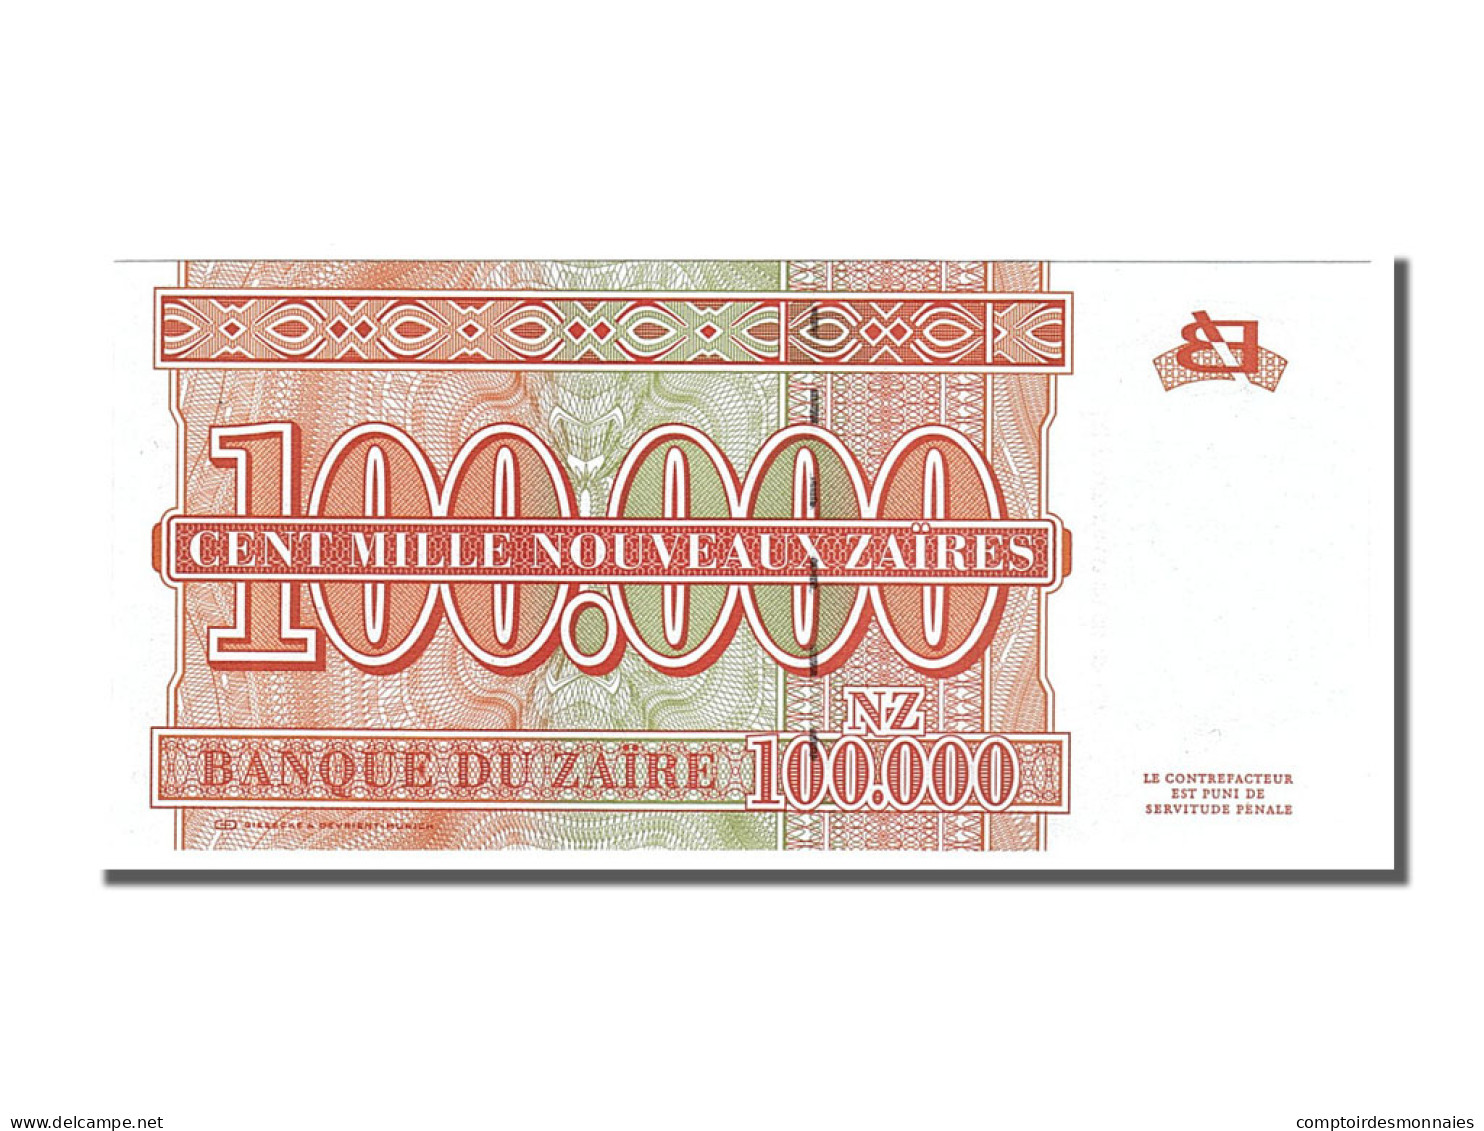 Billet, Zaïre, 100,000 Nouveaux Zaïres, 1996, 1996-06-30, NEUF - Zaire